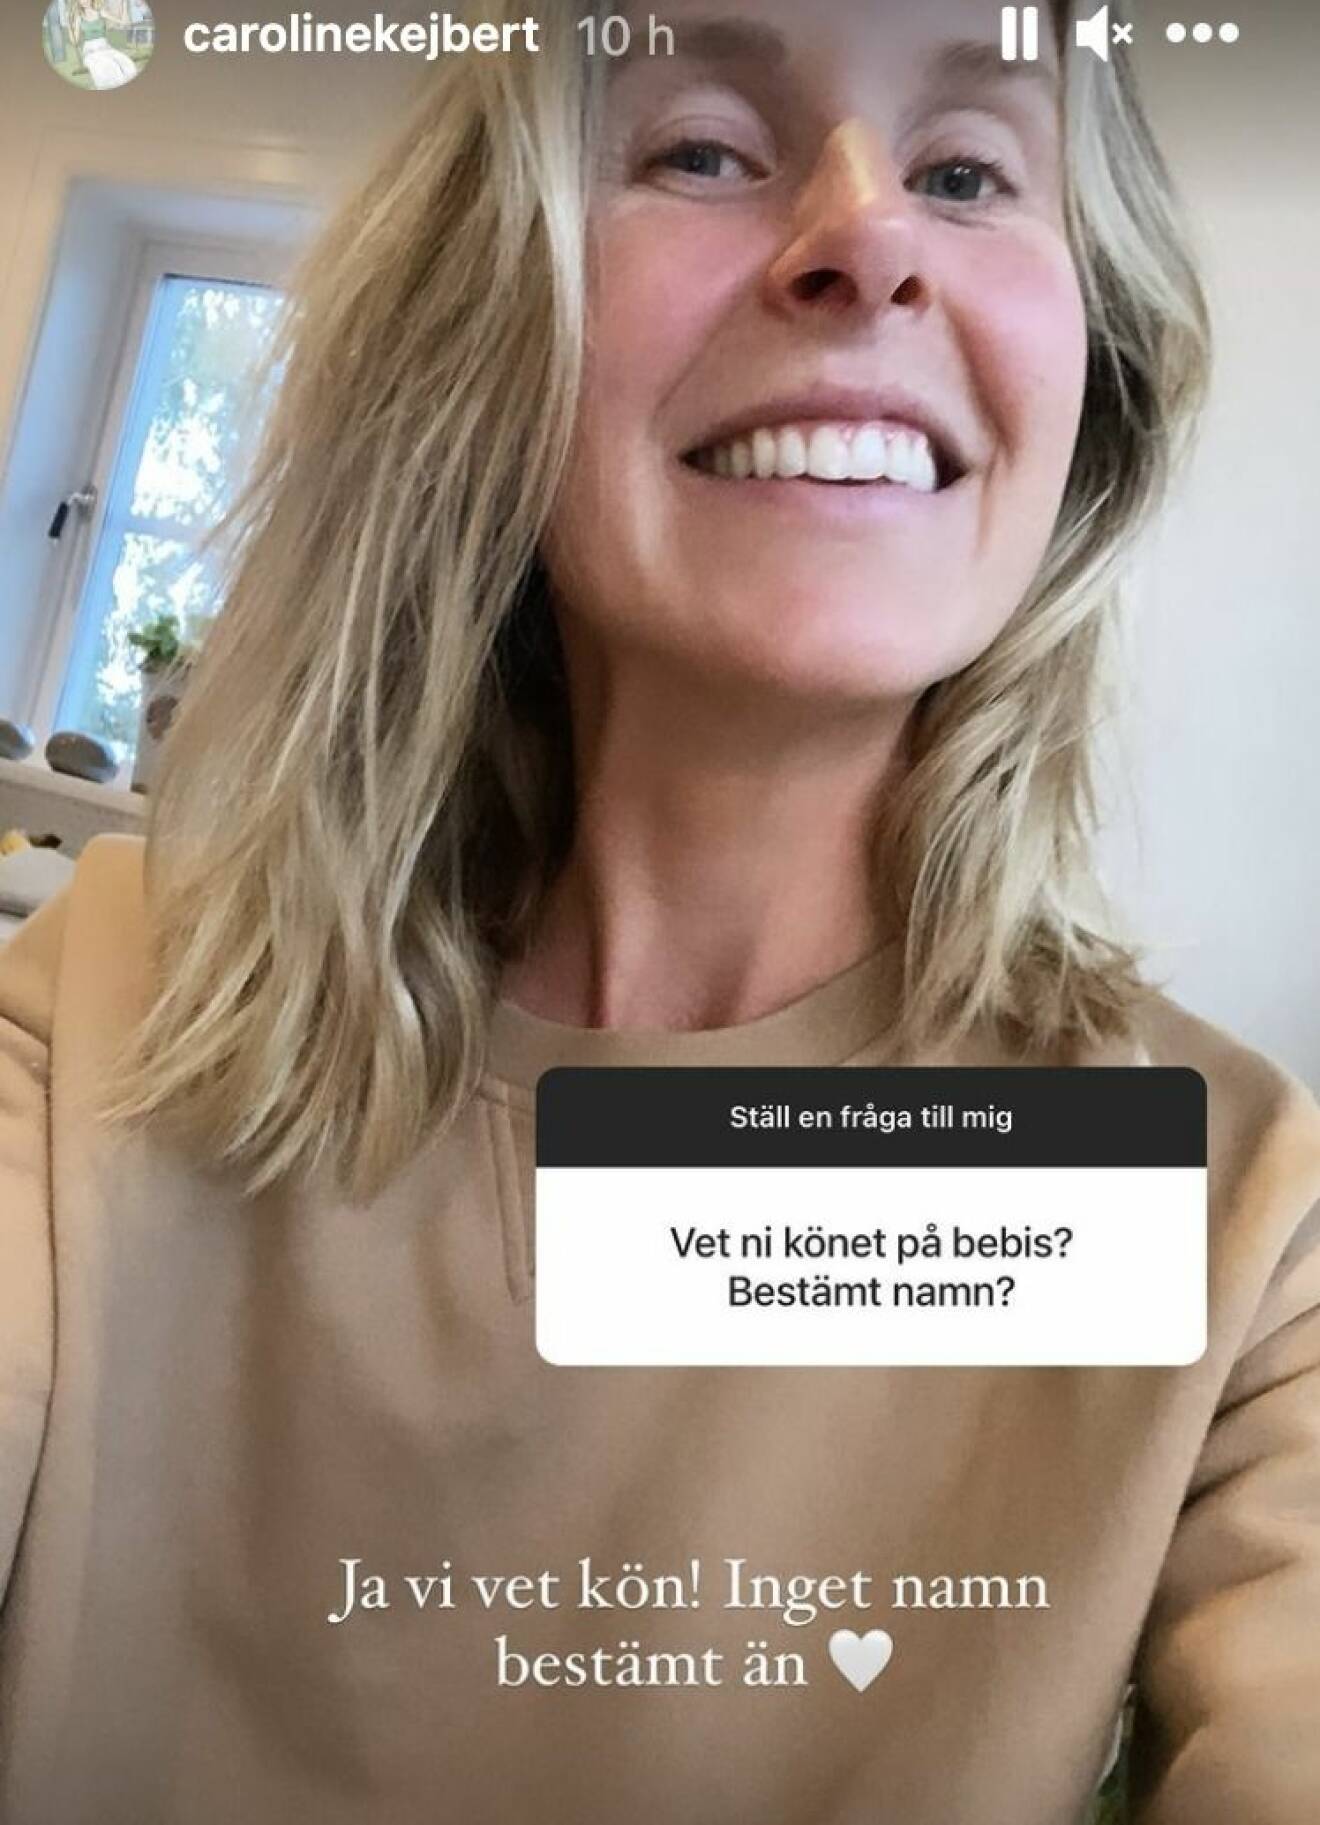 Caroline Kejbert höll i en frågestund på Instagram och svarade på frågor gällande graviditeten.